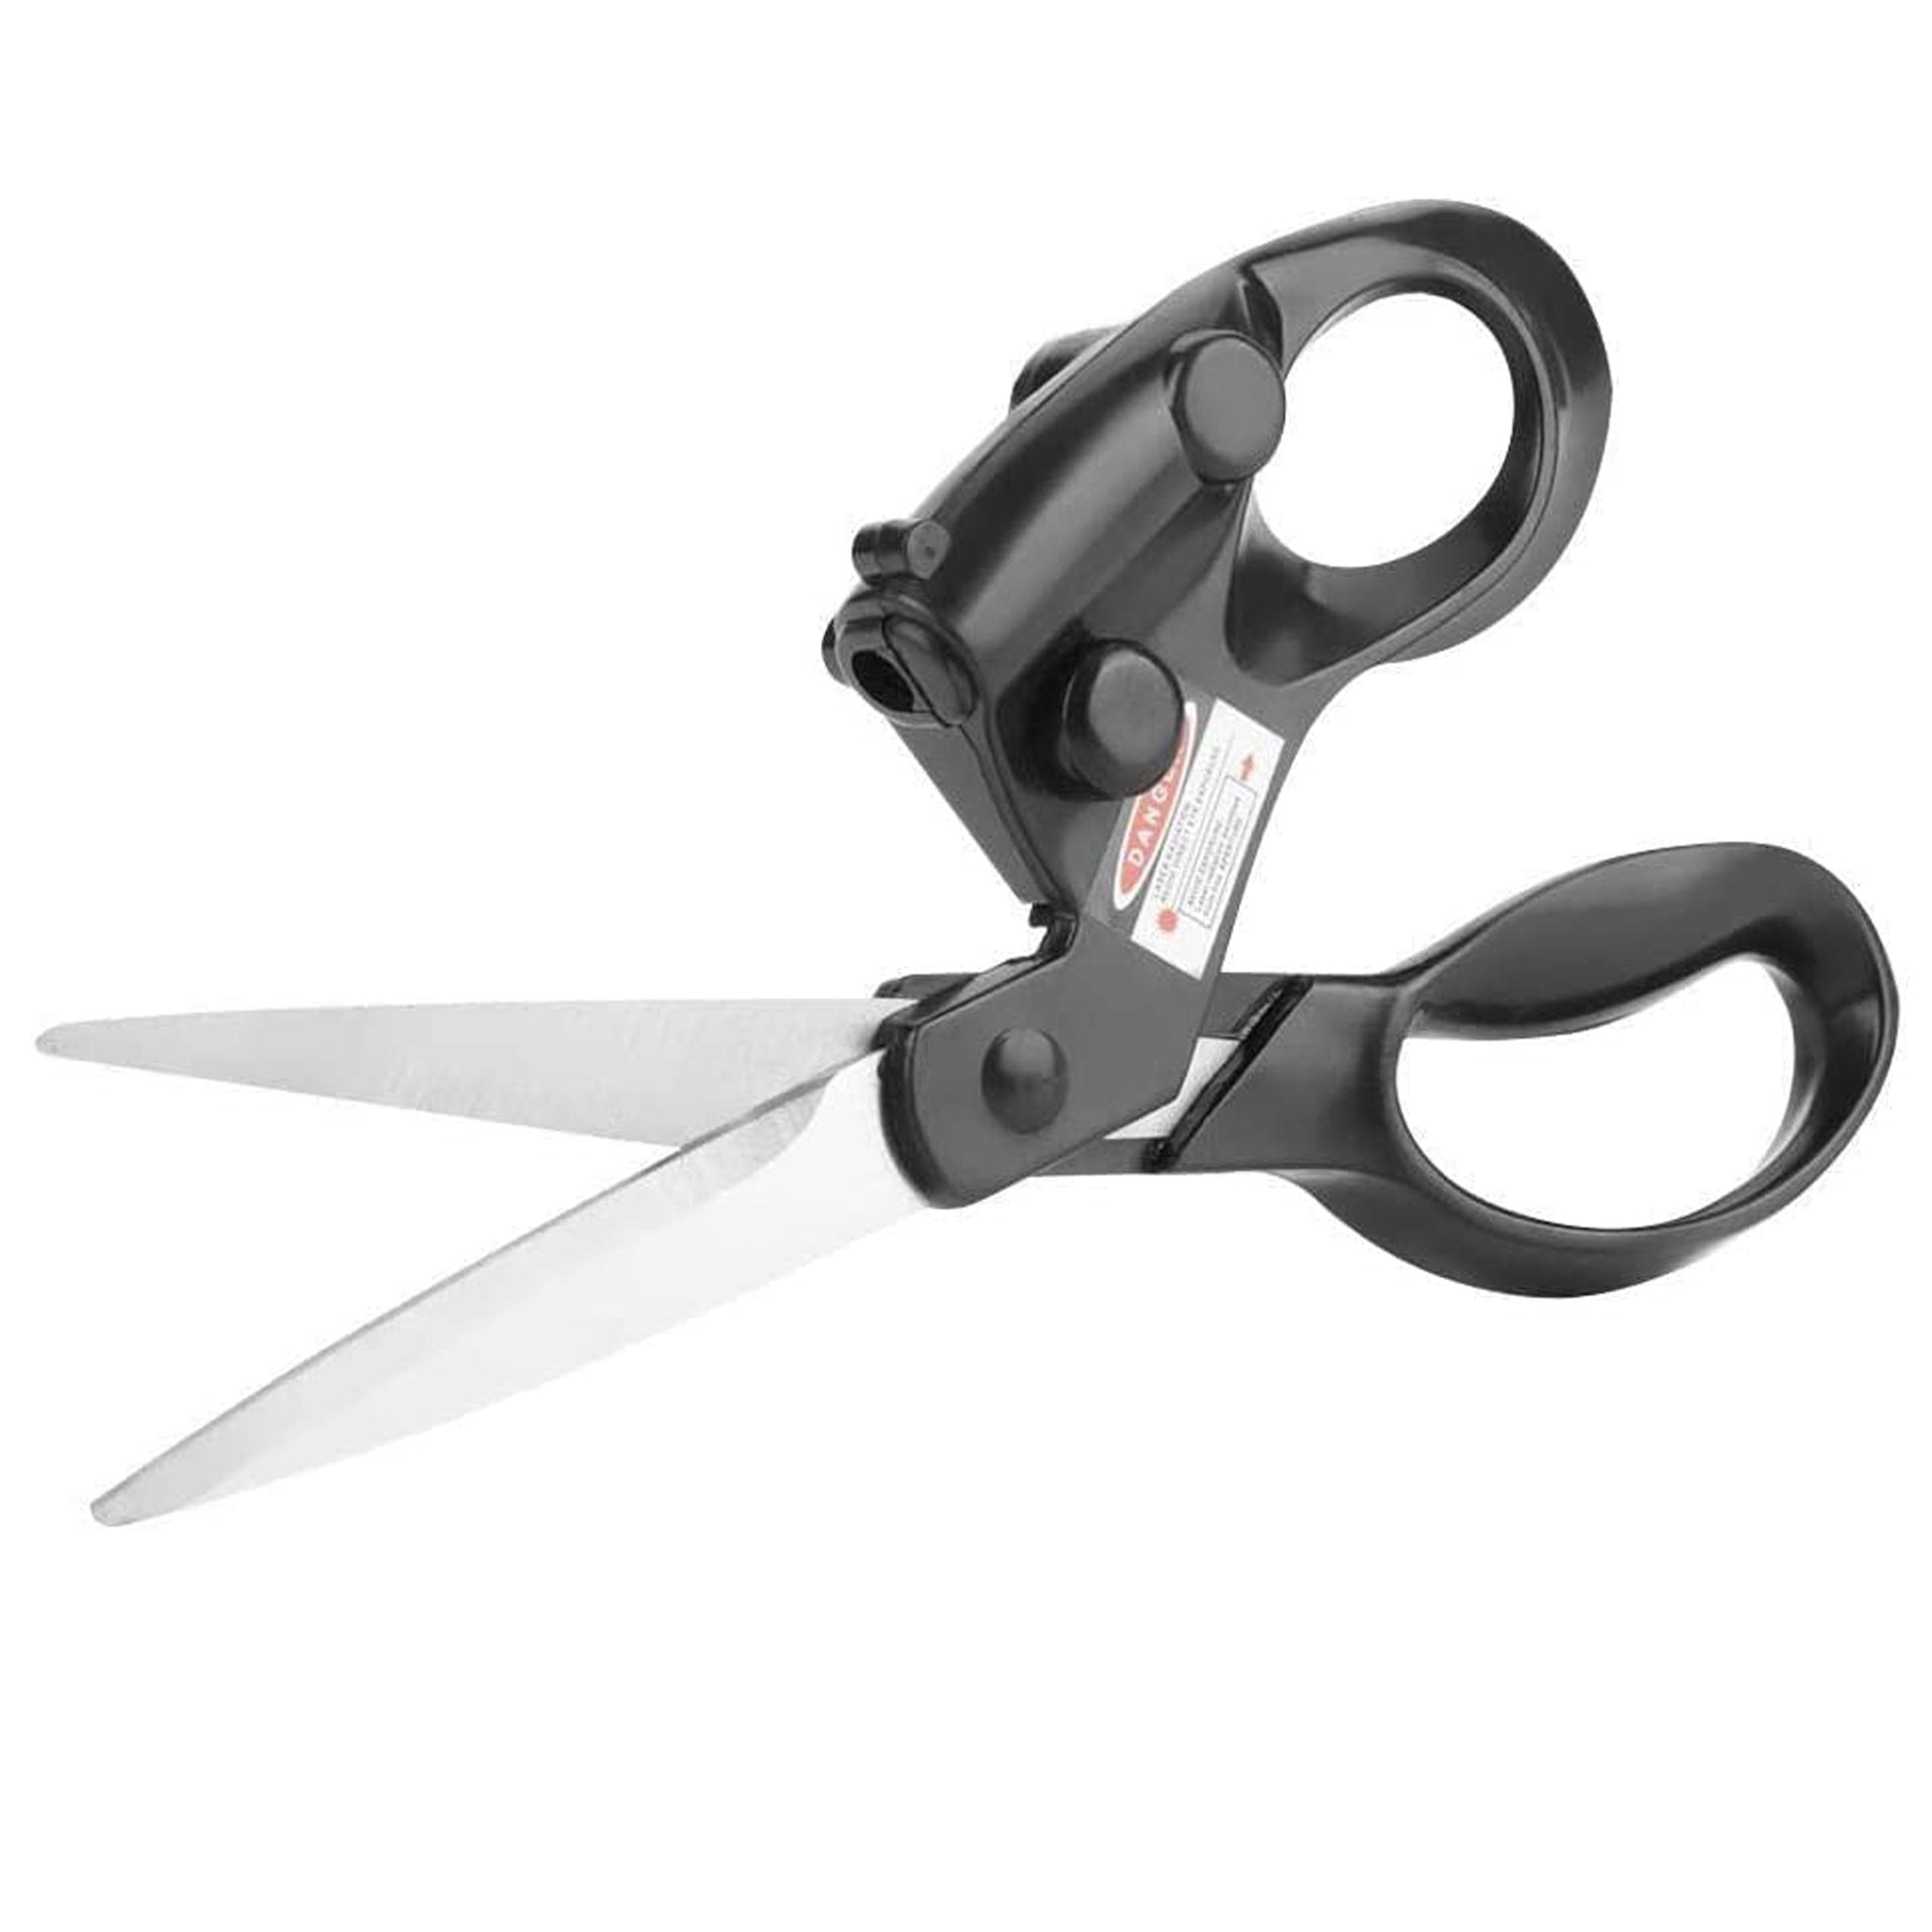 قیچی لیزری DEWIN Scissors – Guided scissors for fabrics